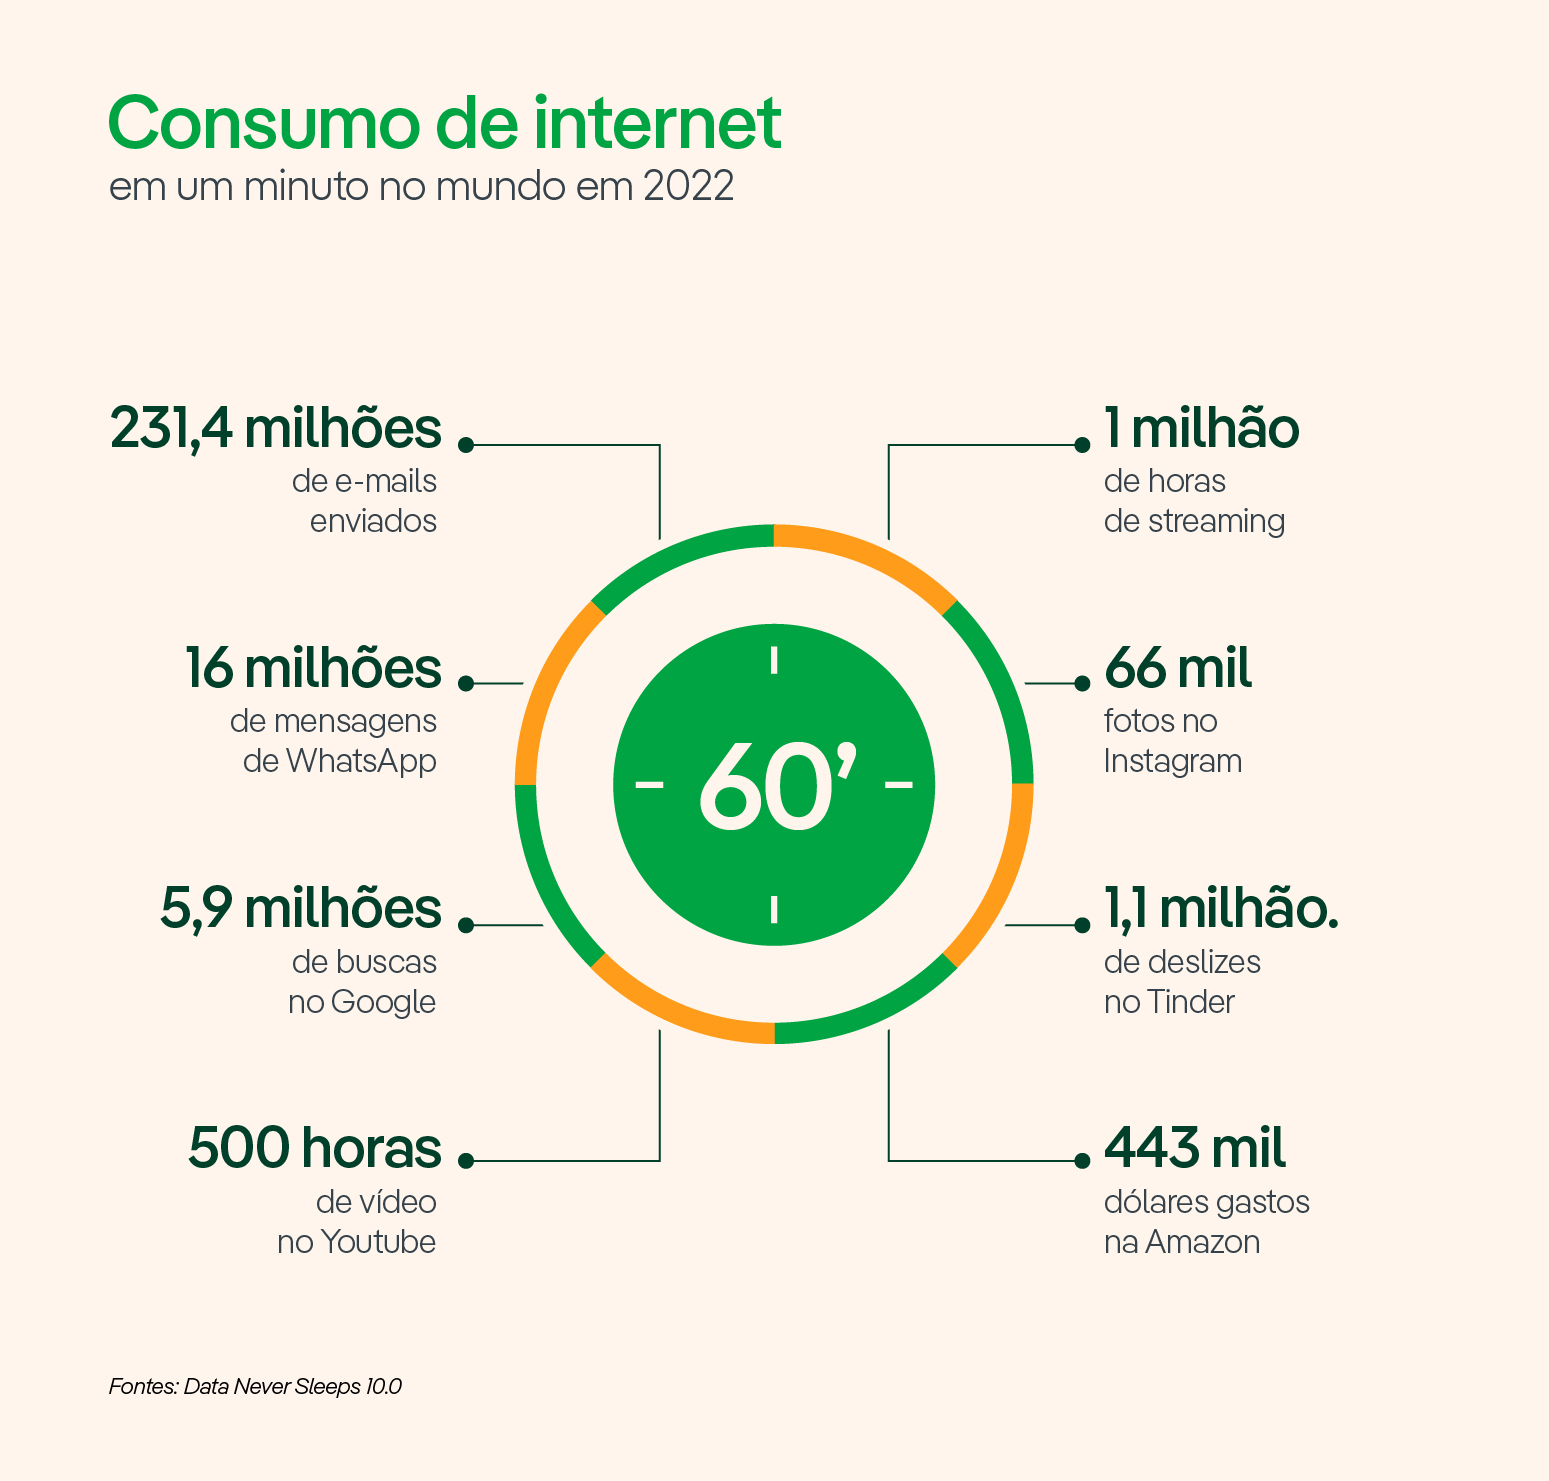 Consumo de internet em um minuto no mundo